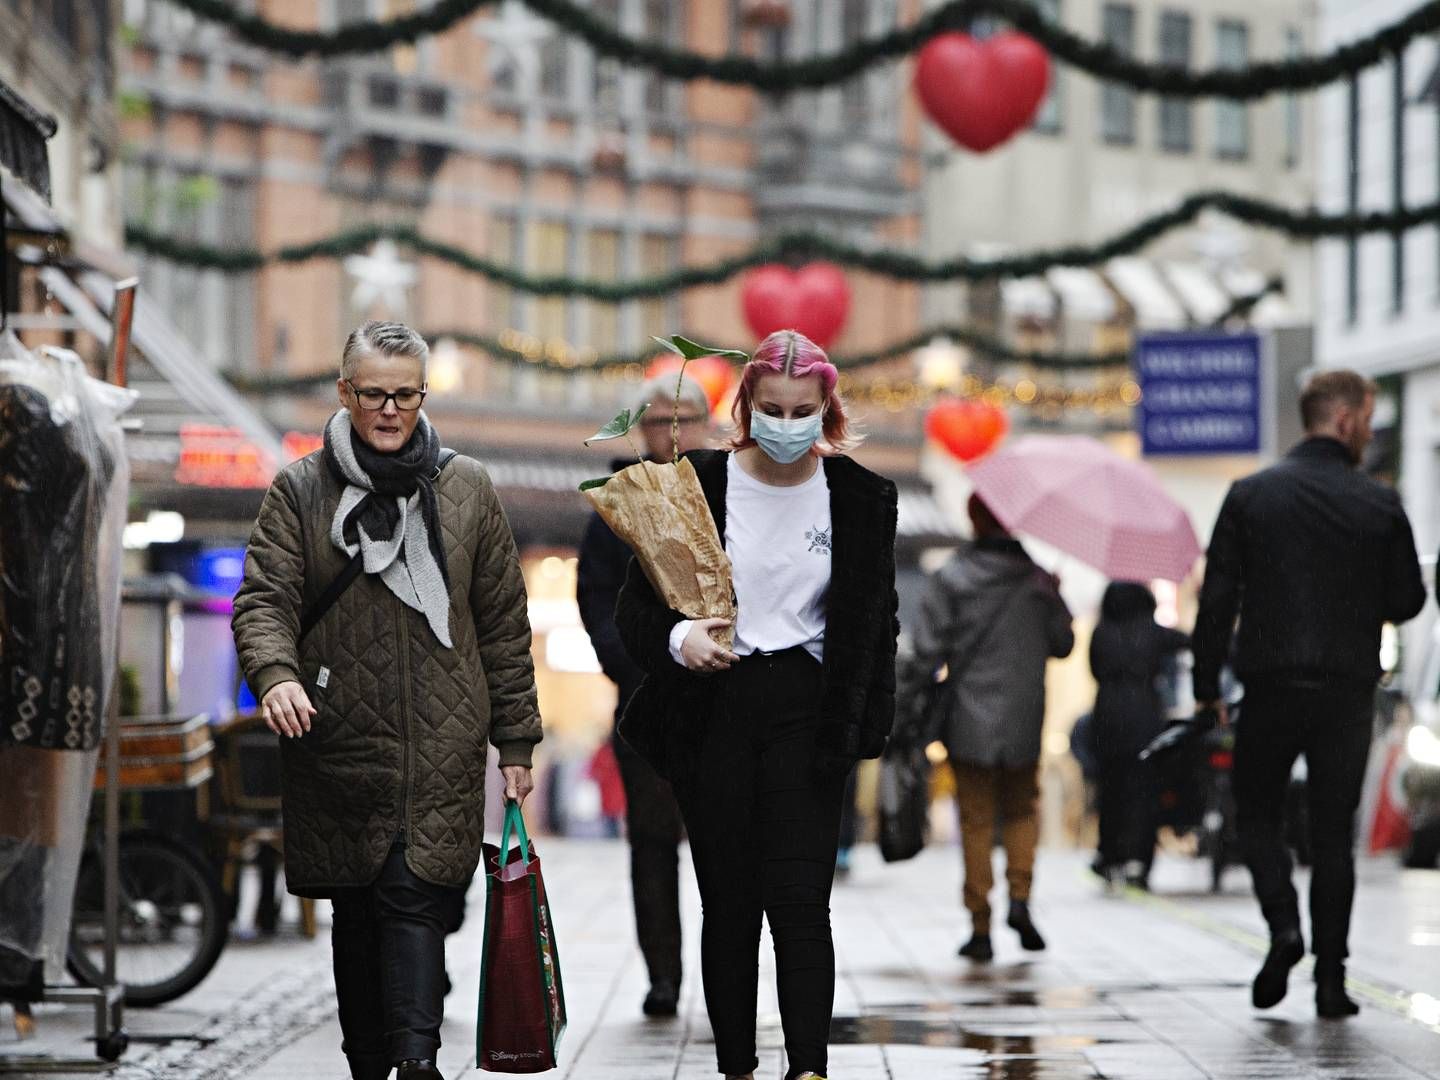 Dansk Erhverv forventer i en ny julehandelsprognose, at det samlede julesalg stiger med 200 mio. kr. Til gengæld forventes butikkernes indtjening at falde. | Foto: Martin Lehmann